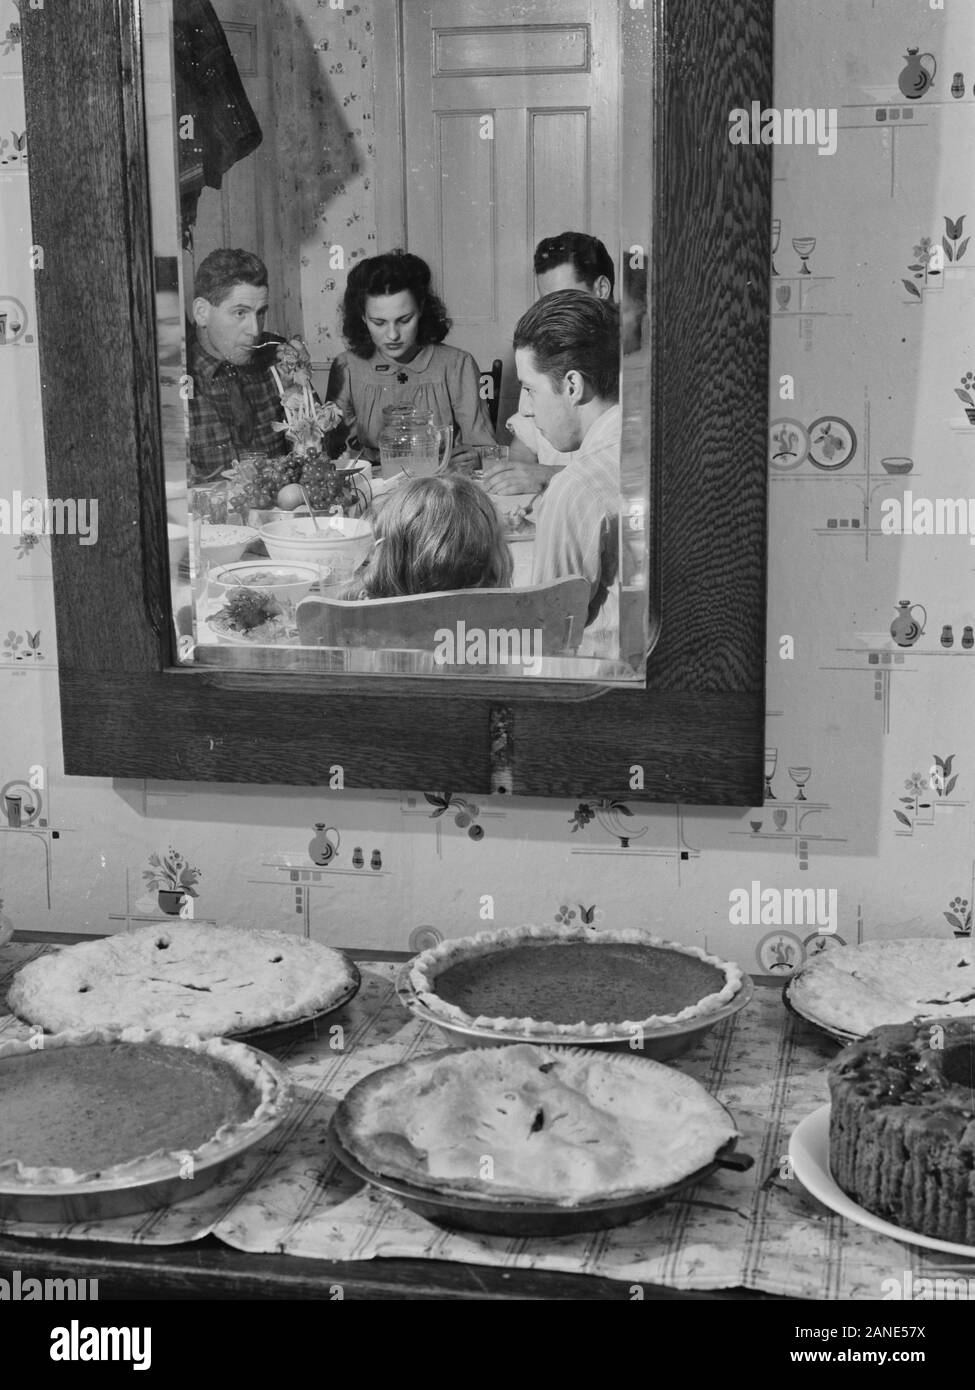 Des tartes à la citrouille et le dîner de Thanksgiving à la maison de M. Timothy Levy Crouch, un Rogerine Chrislar, Quaker vivant dans le Connecticut. Novembre, 1940 Banque D'Images